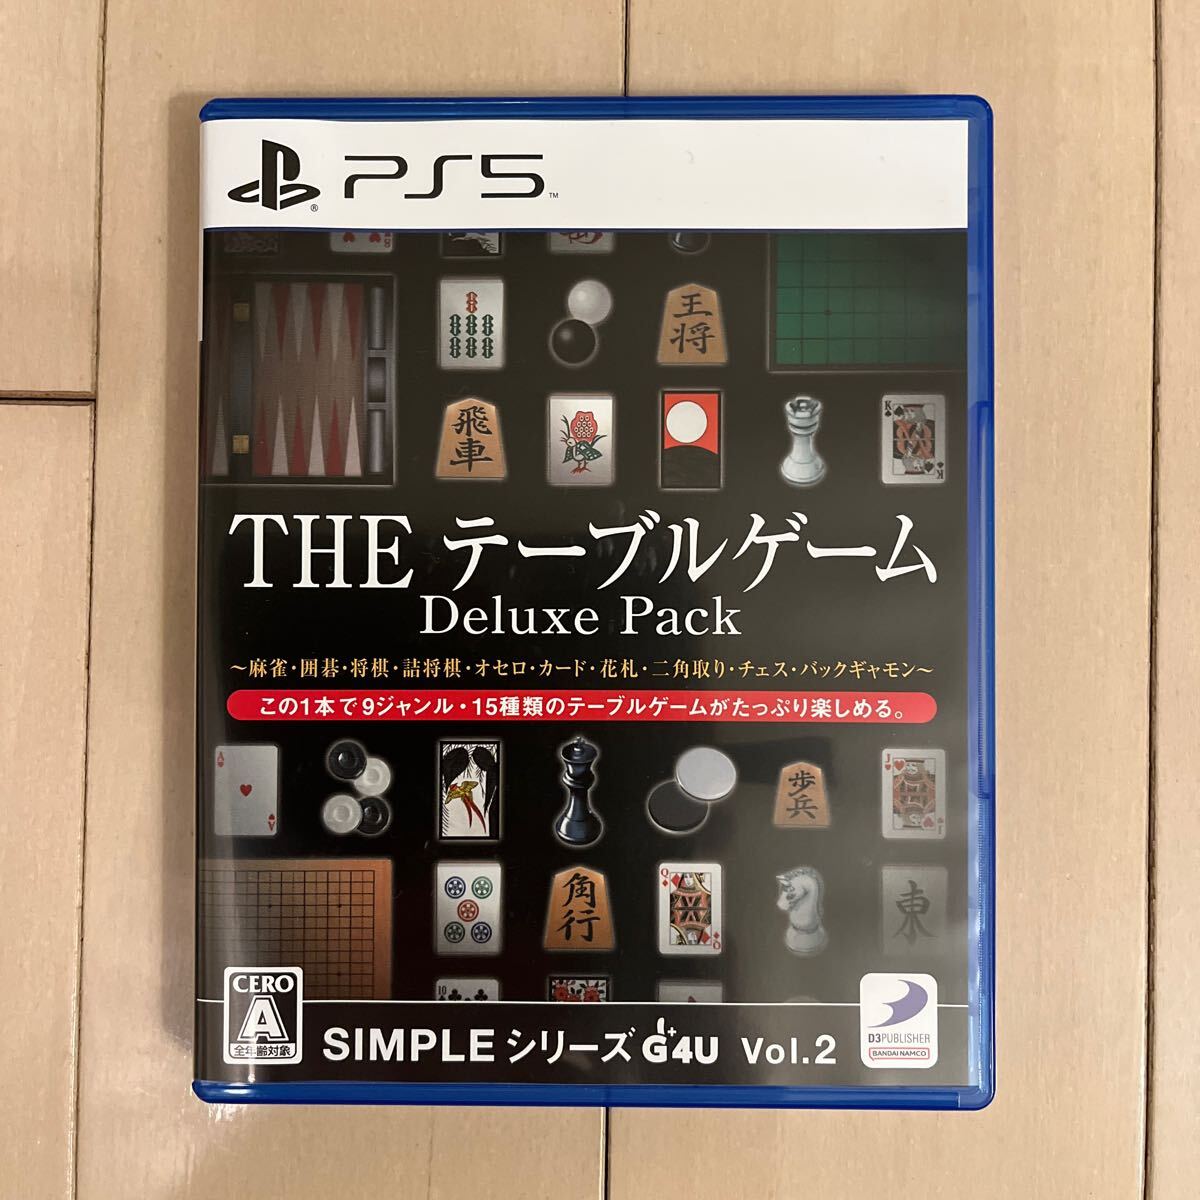 送料無料PS5 SIMPLEシリーズG4U Vol.2 THEテーブルゲーム Deluxe Pack_画像1